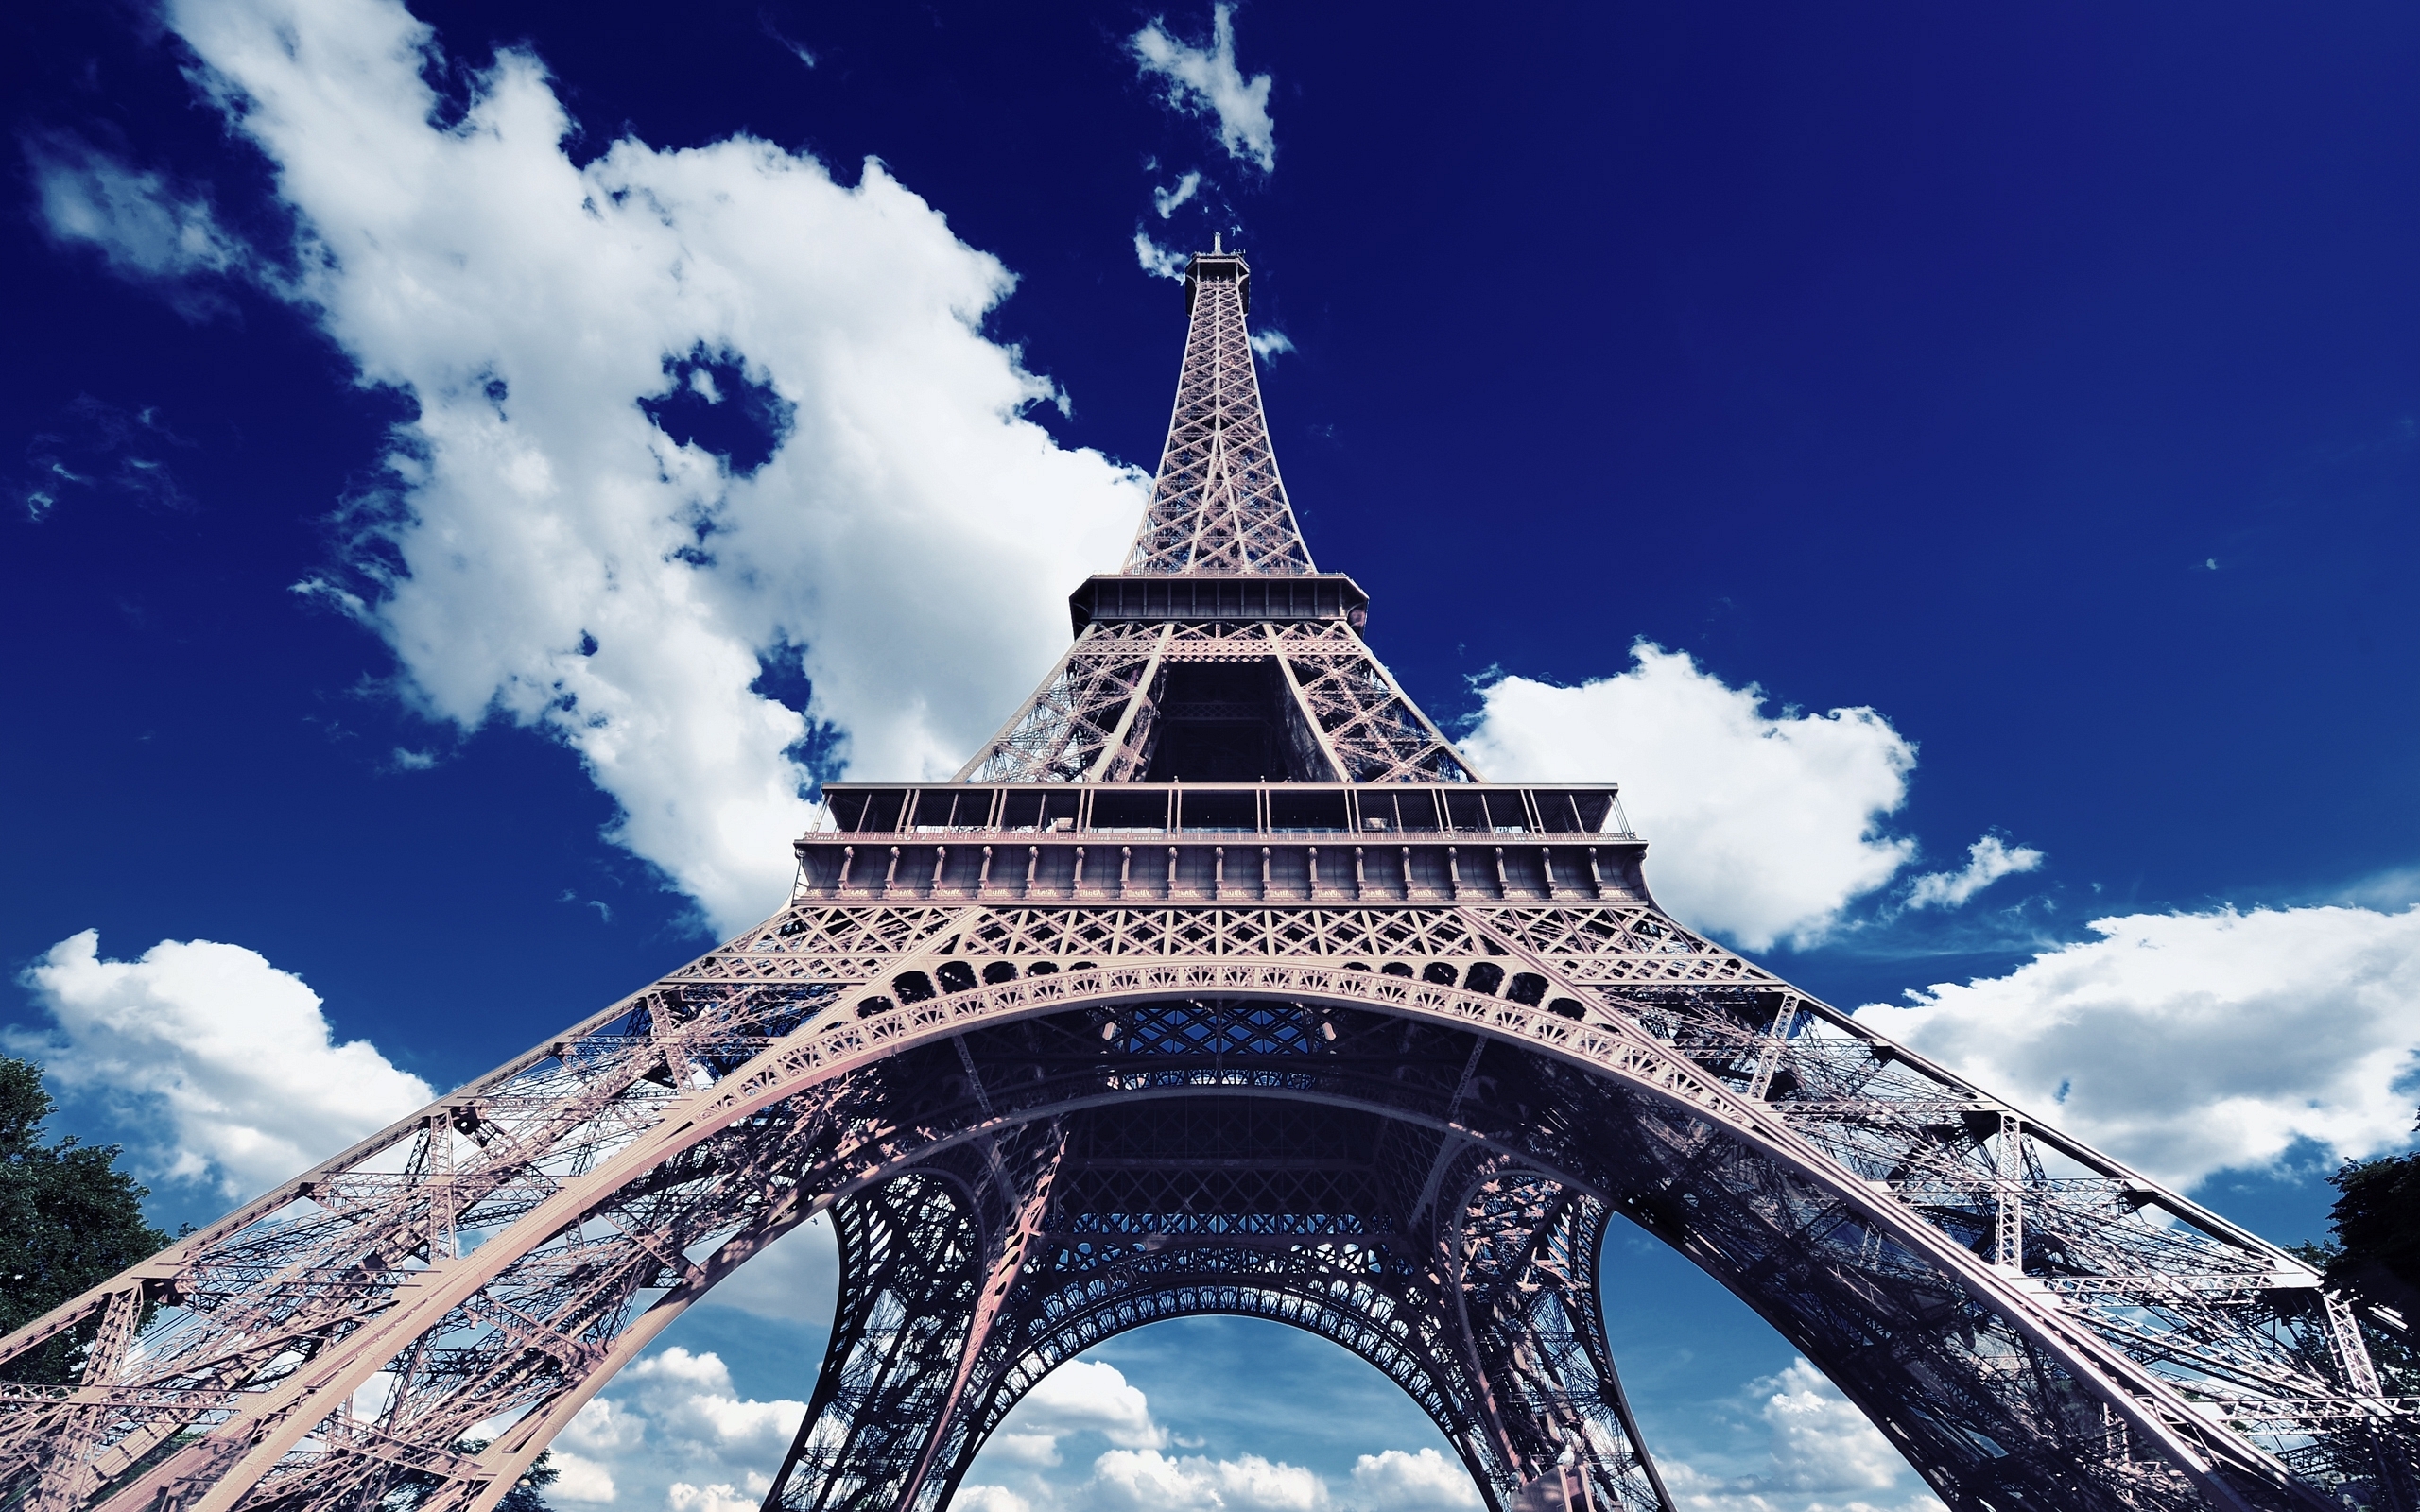 Красивые картинки на телефон популярные. Франция Париж Эйфелева башня. Эльфовая башня э. Эйфелева башня. Г. А. Эйфель. Париж на фоне эльфовой башни.